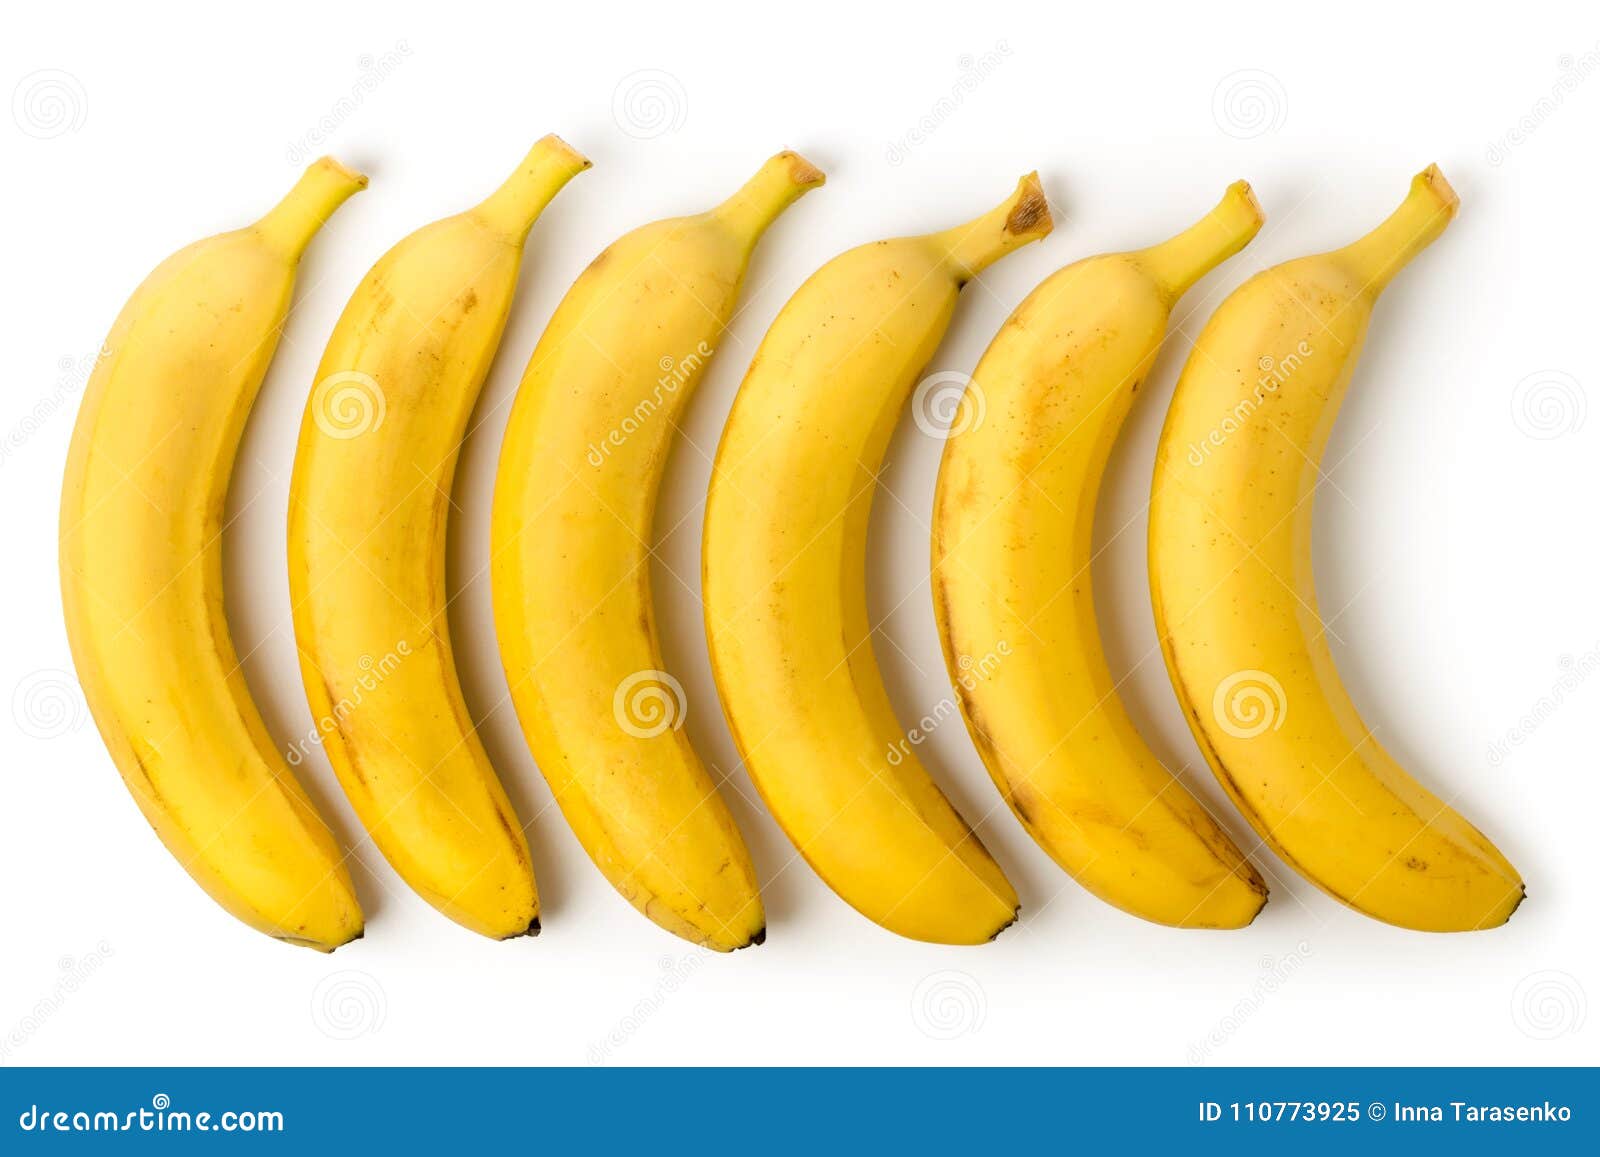 Сколько лежат бананы. Бананы в ряд. Бананы 5 штук. 6 Бананов. 5 Бананов для детей.